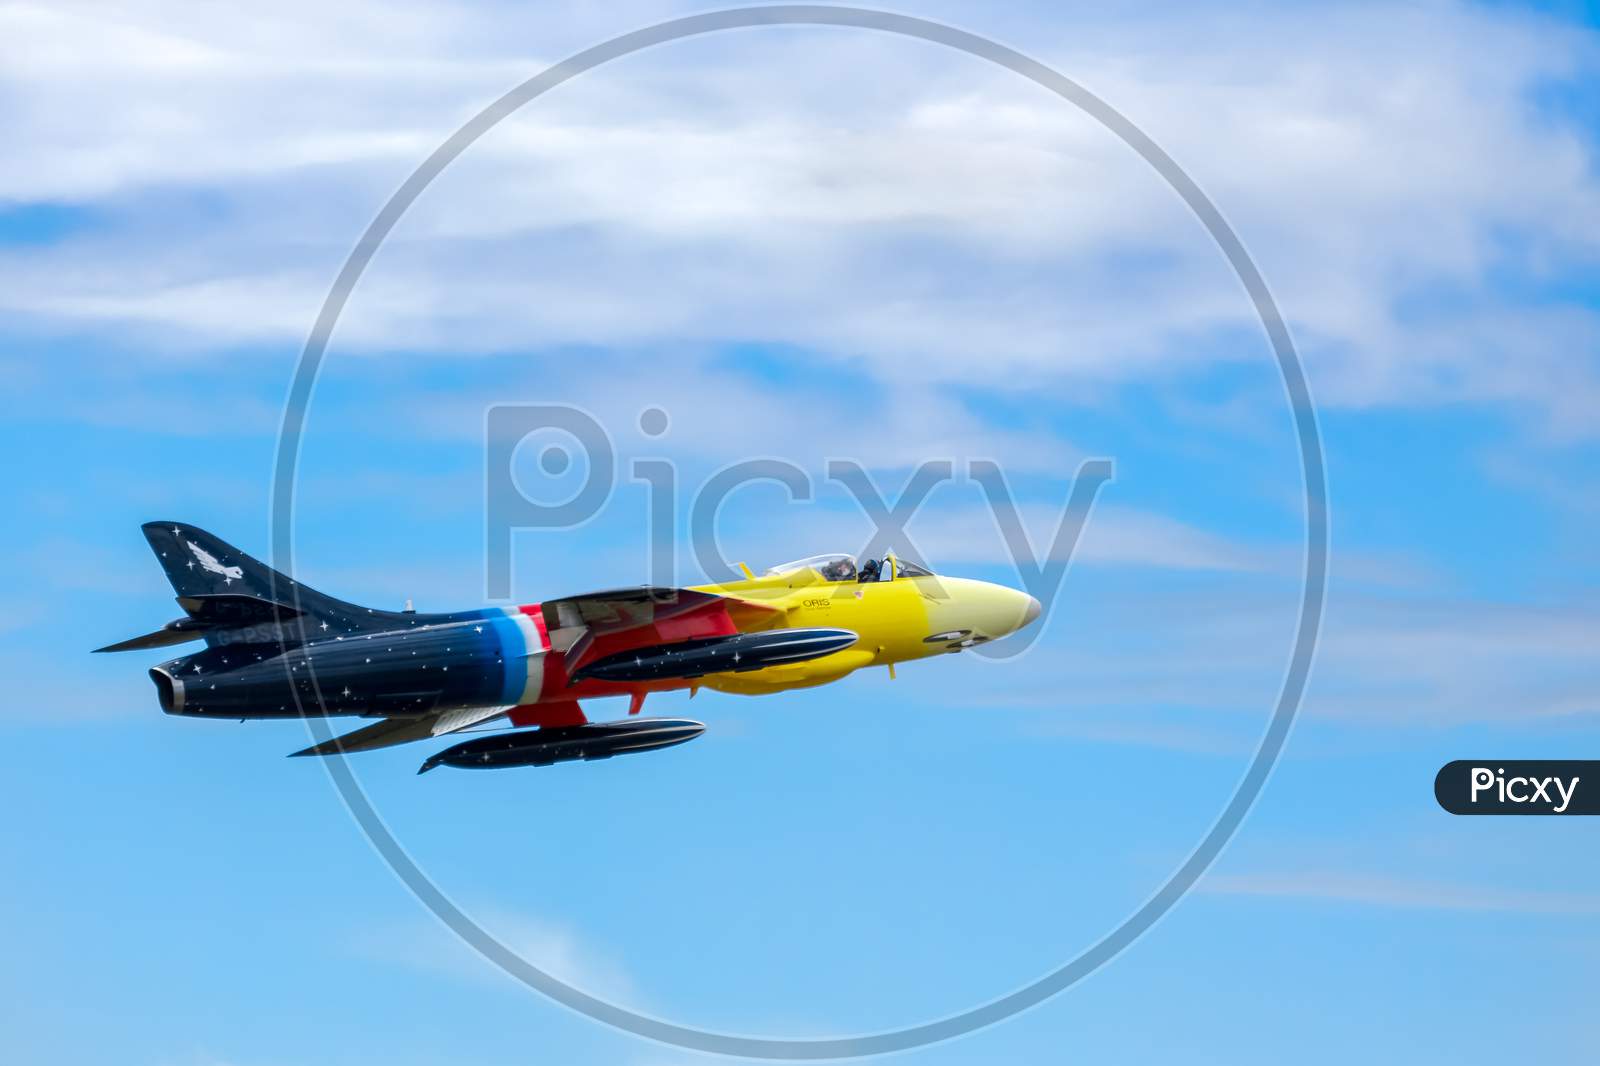 Hawker Hunter Miss Demeanour Aerial Display At Shoreham Airshow